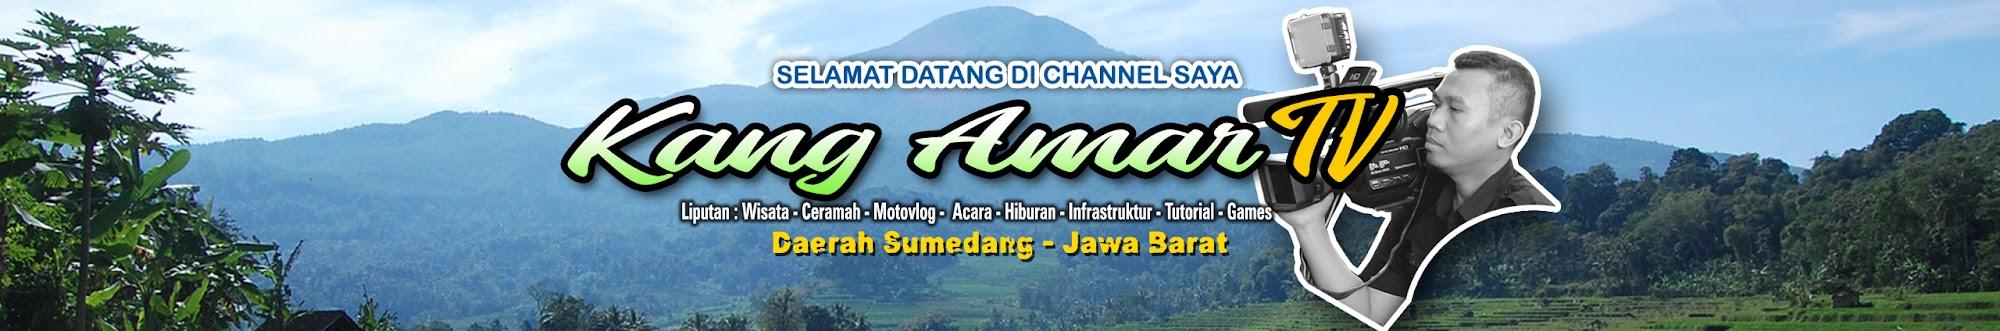 Kang Amar TV